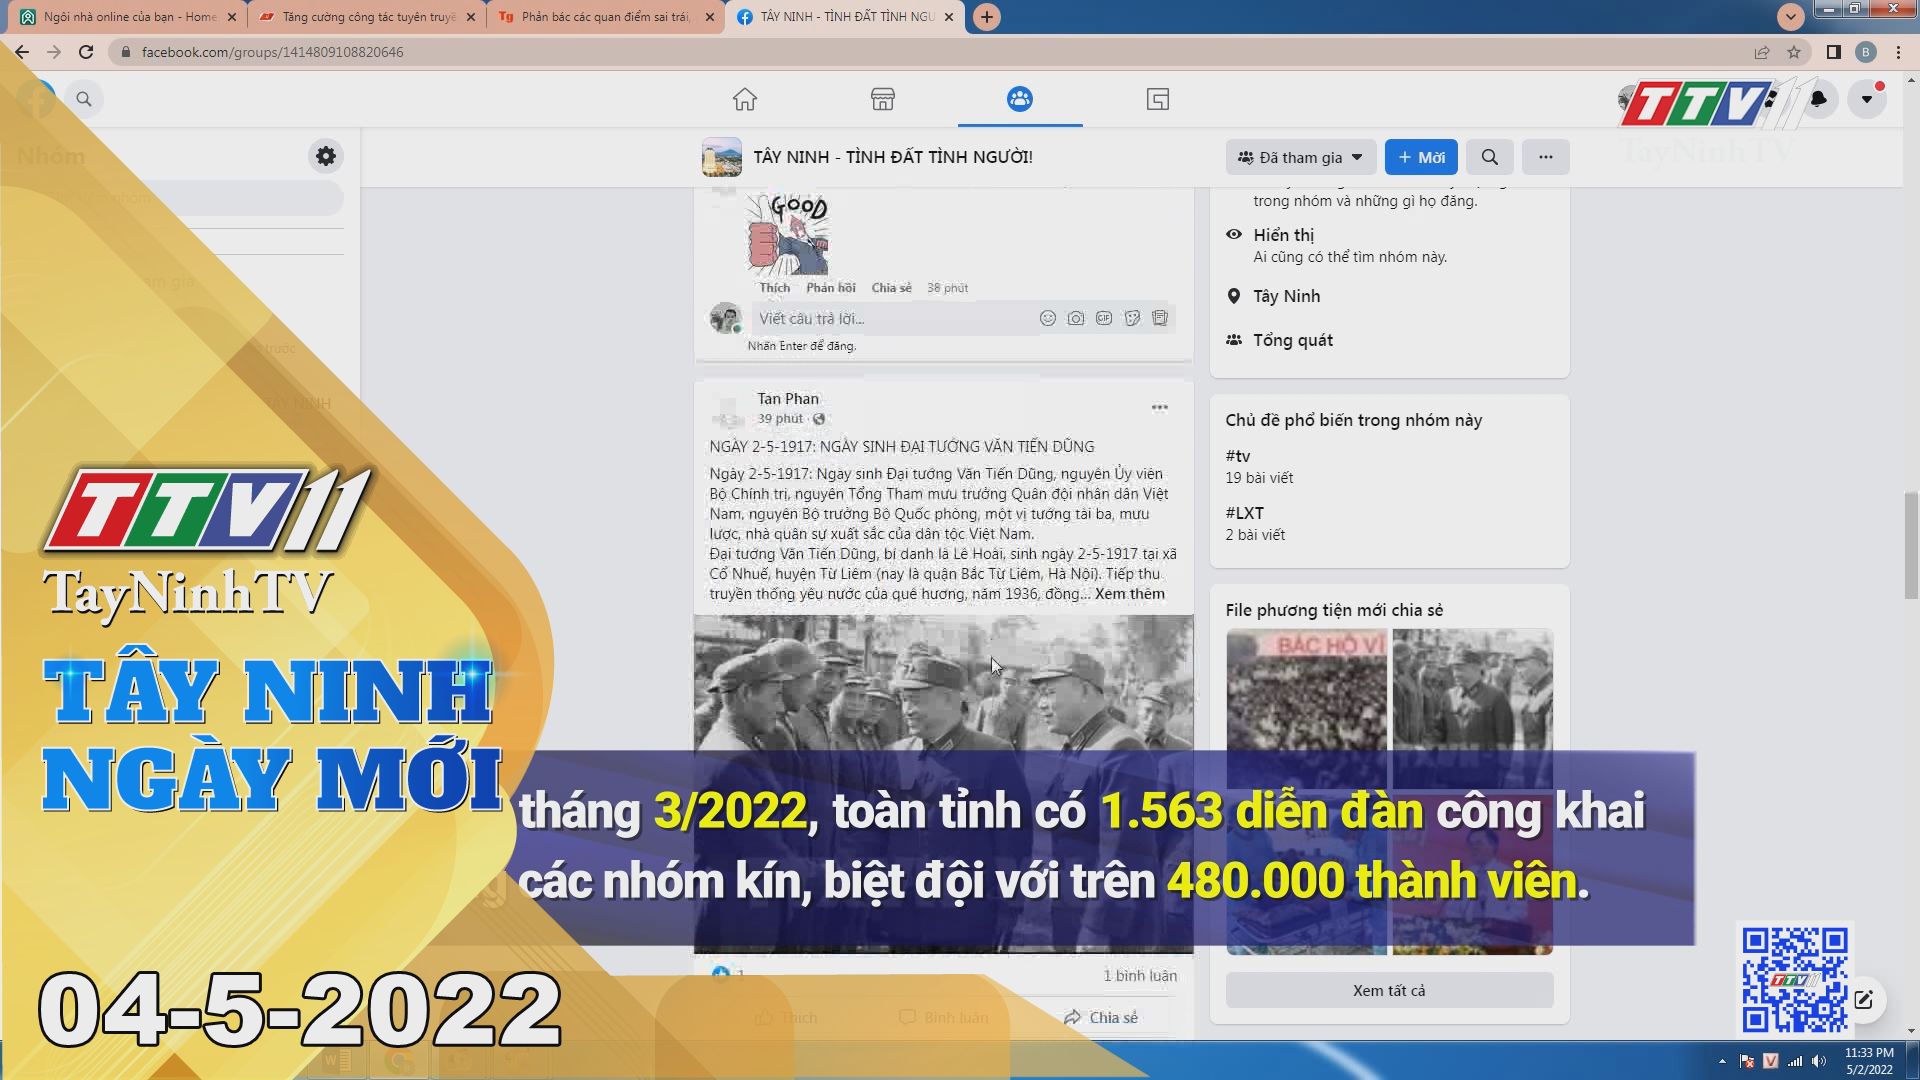 Tây Ninh ngày mới 04-5-2022 | Tin tức hôm nay | TayNinhTV